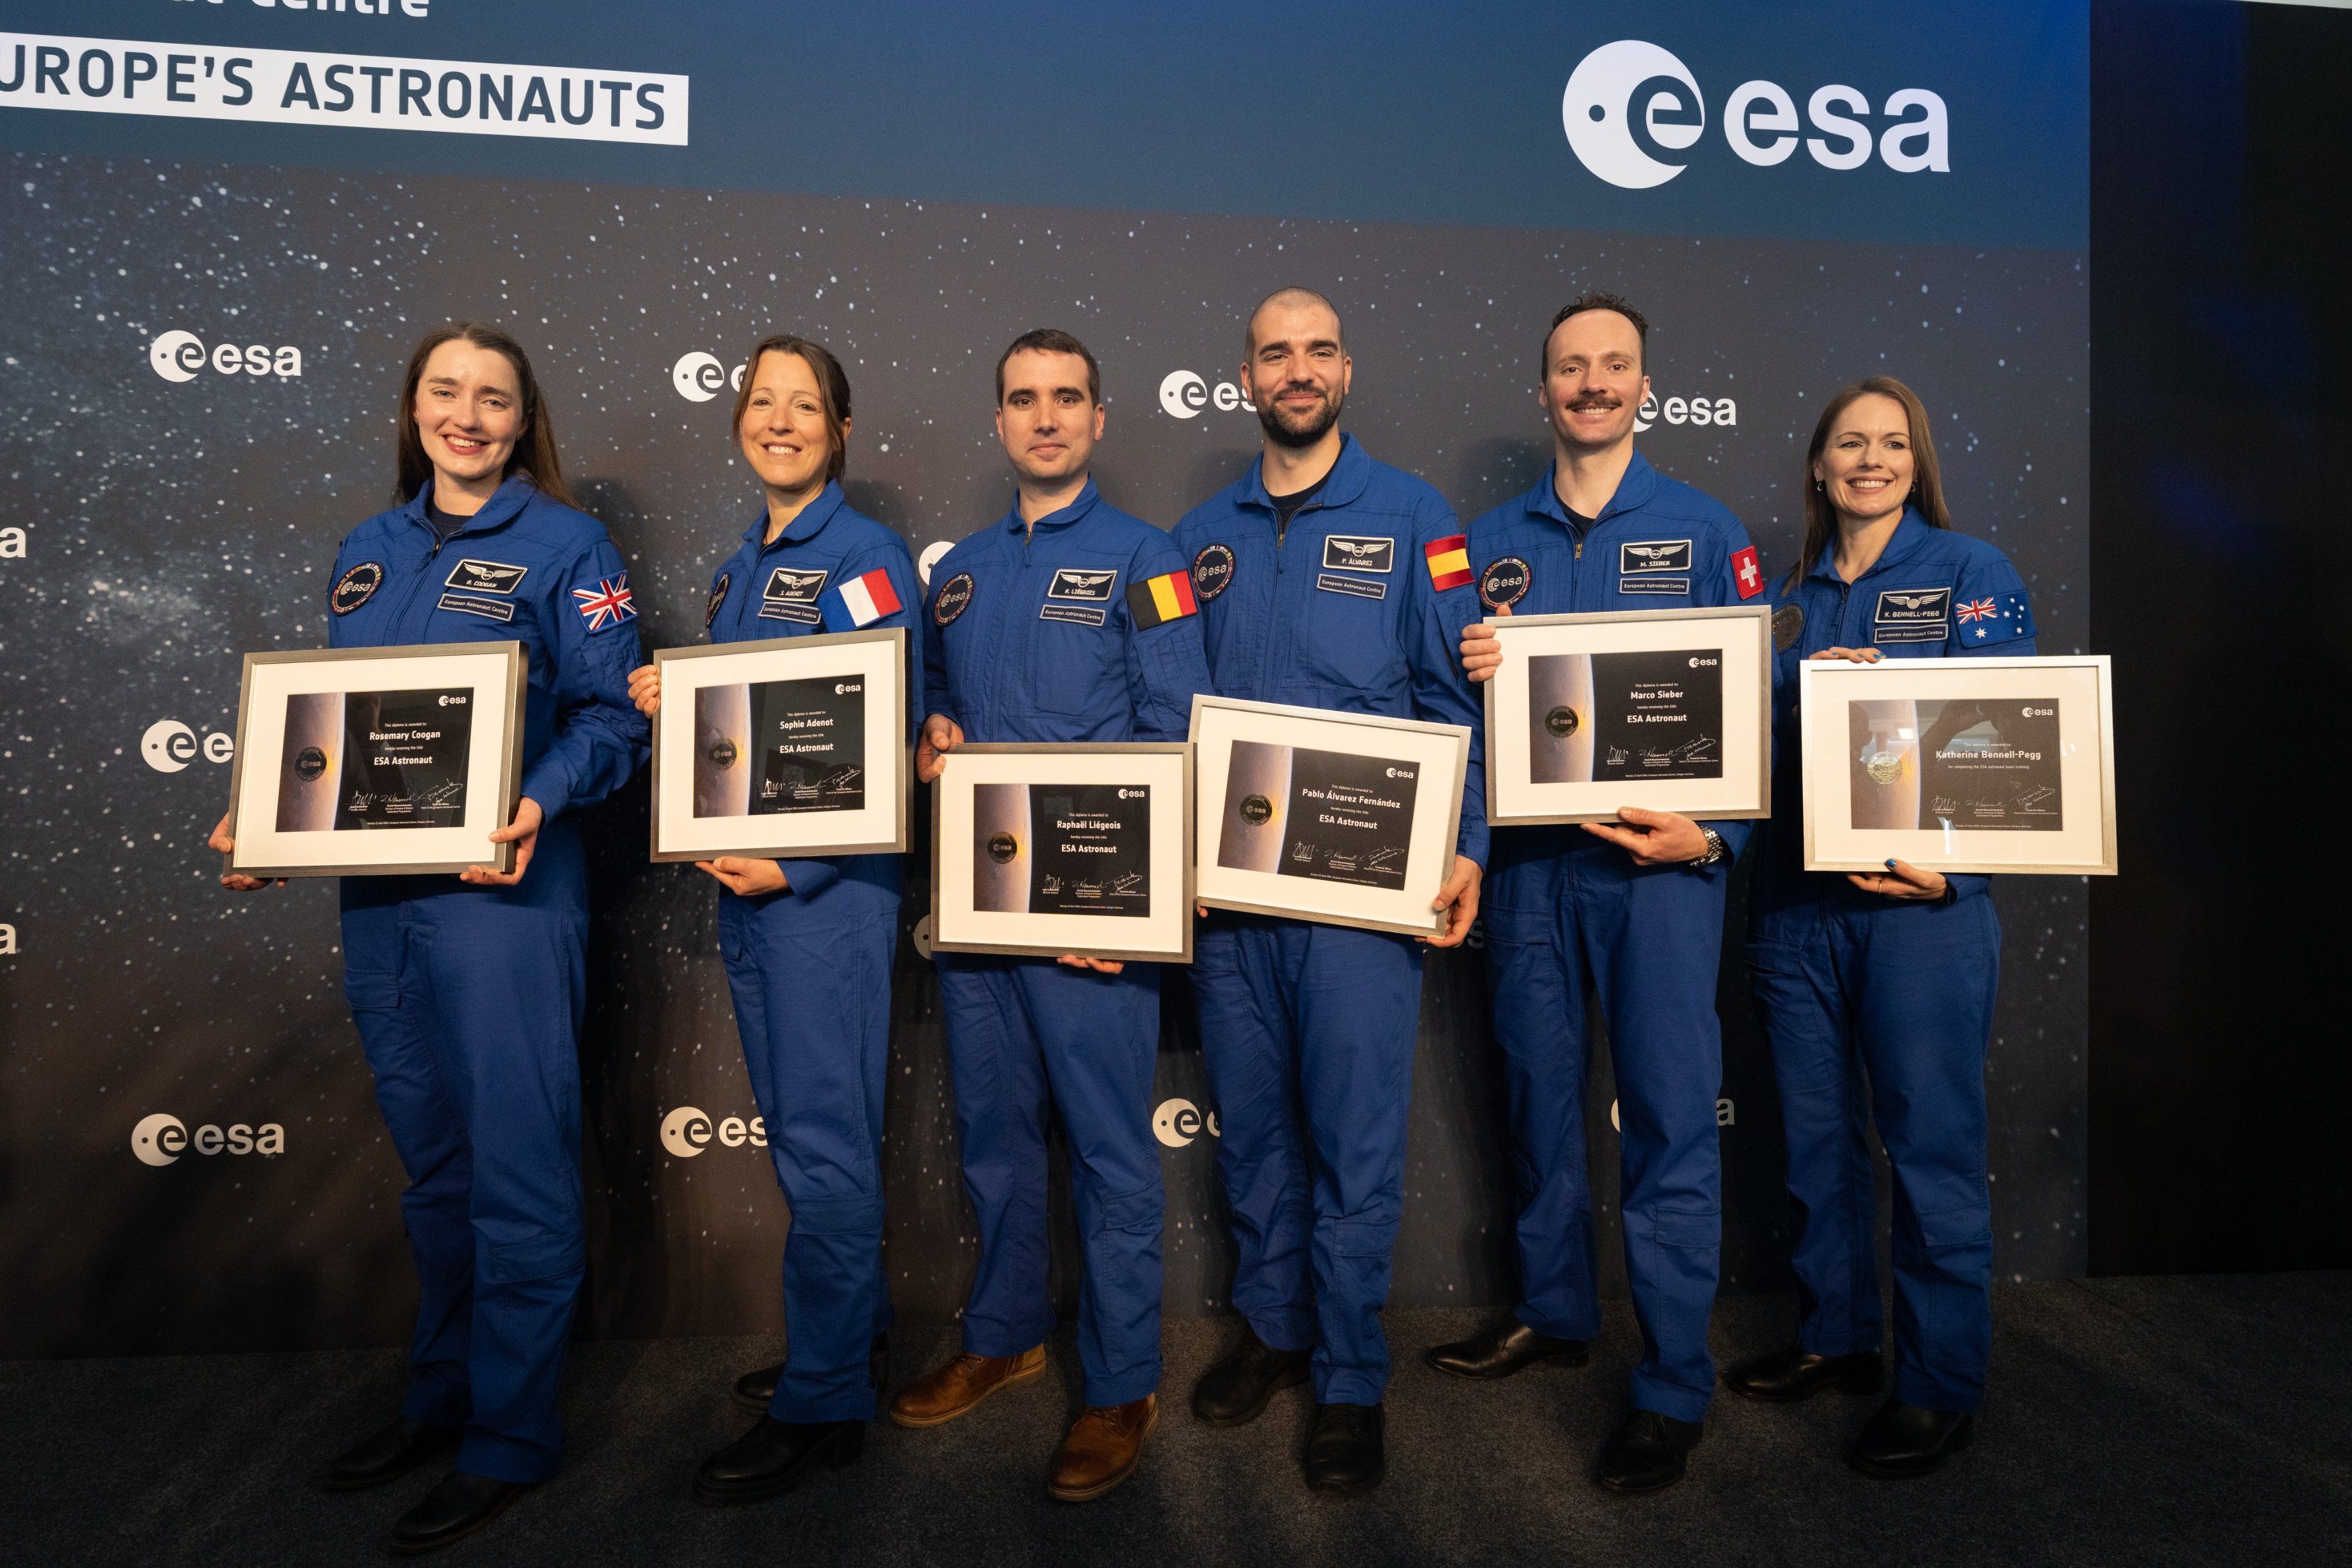 El leonés Pablo Álvarez ya es astronauta de la Agencia Espacial Europea 